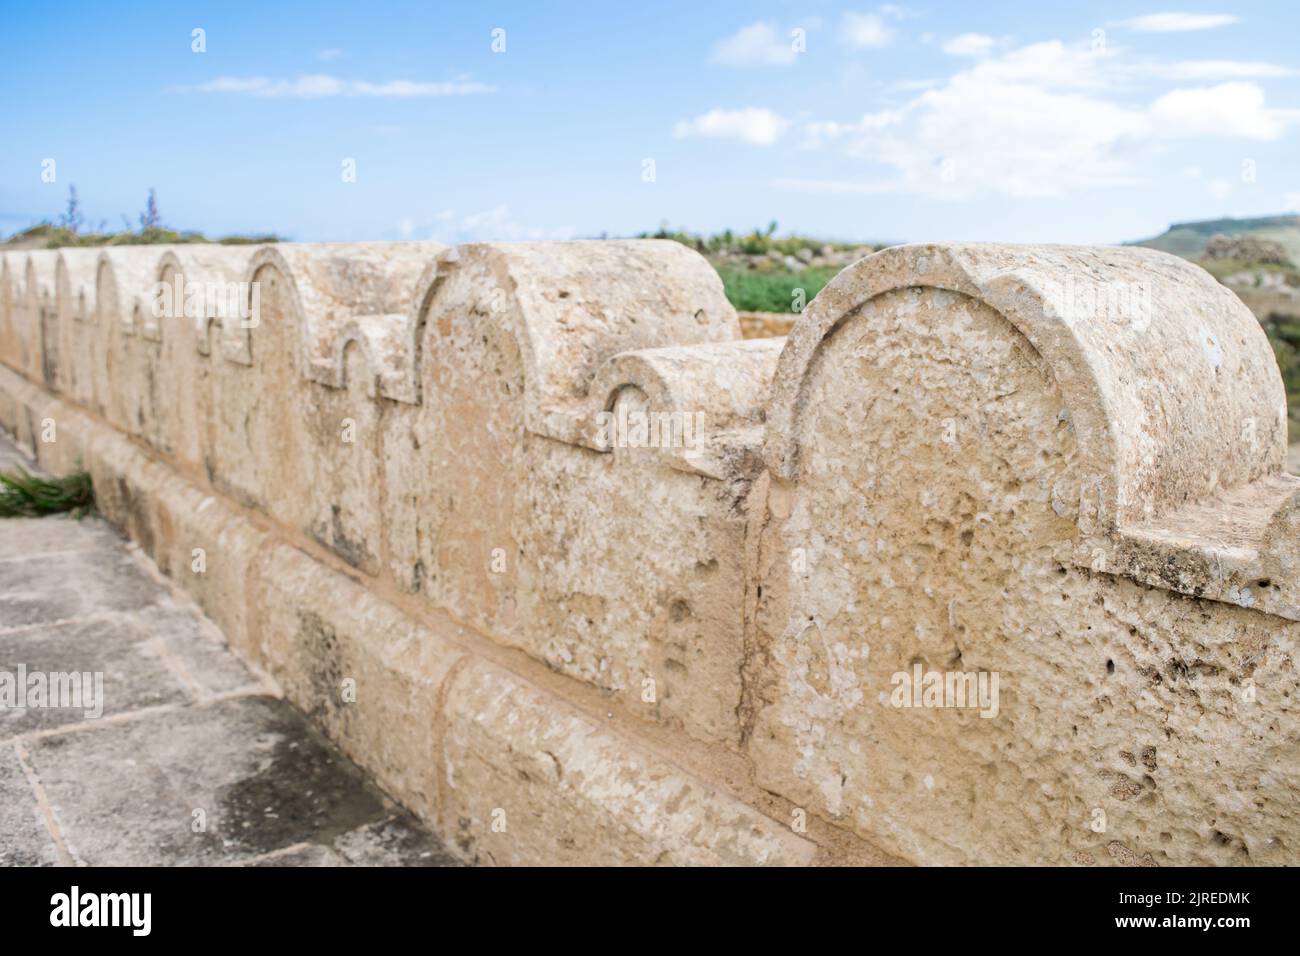 Ein Kalksteinzaun oder eine Grenze, die mit kleinen und großen Steinbögen um die St. Dimitri-Kapelle im ländlichen Dorf Gharb, Gozo, Malta, geschmückt ist Stockfoto